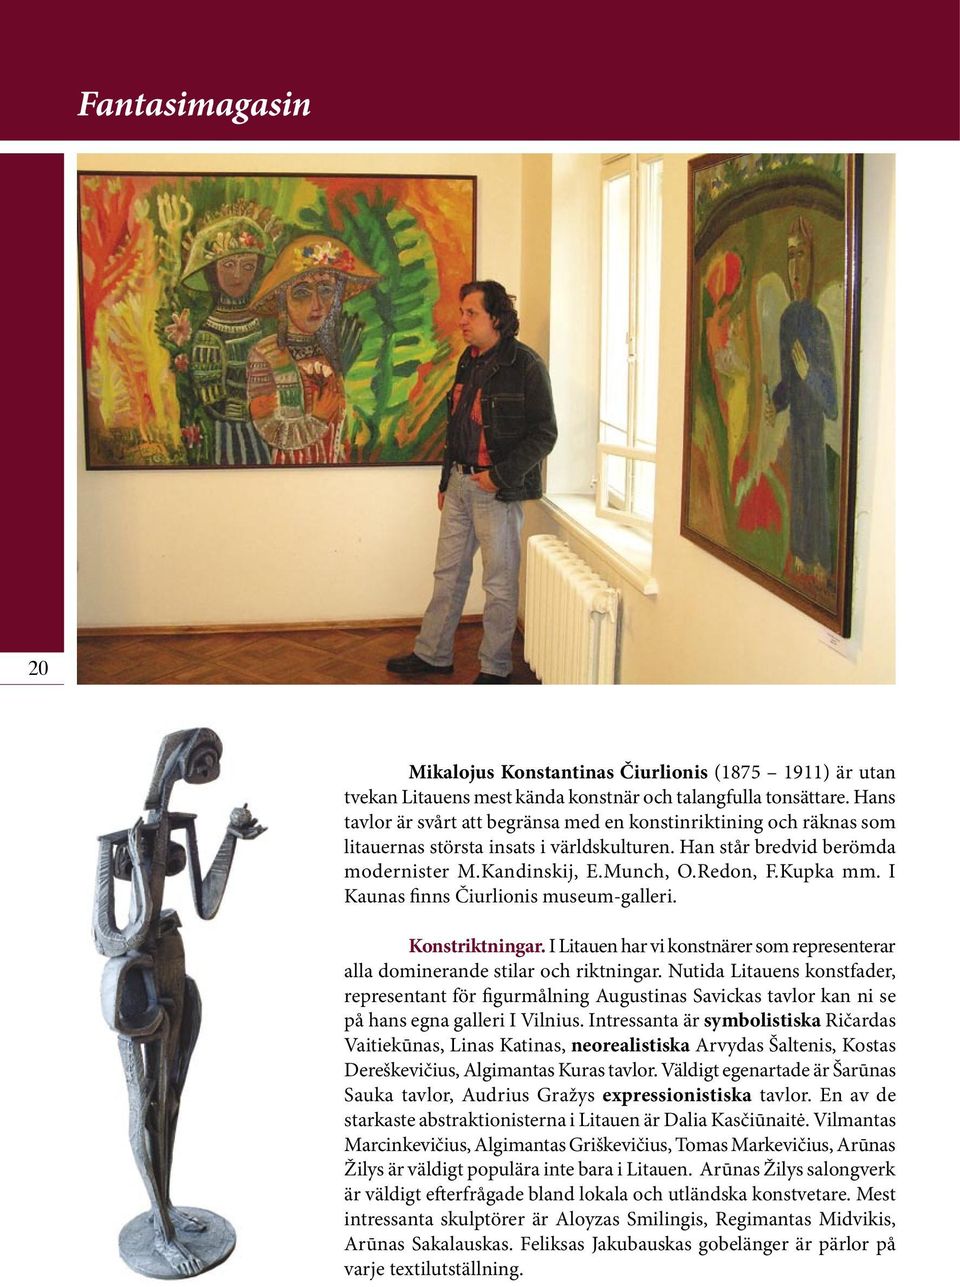 I Kaunas finns Čiurlionis museum-galleri. Konstriktningar. I Litauen har vi konstnärer som representerar alla dominerande stilar och riktningar.